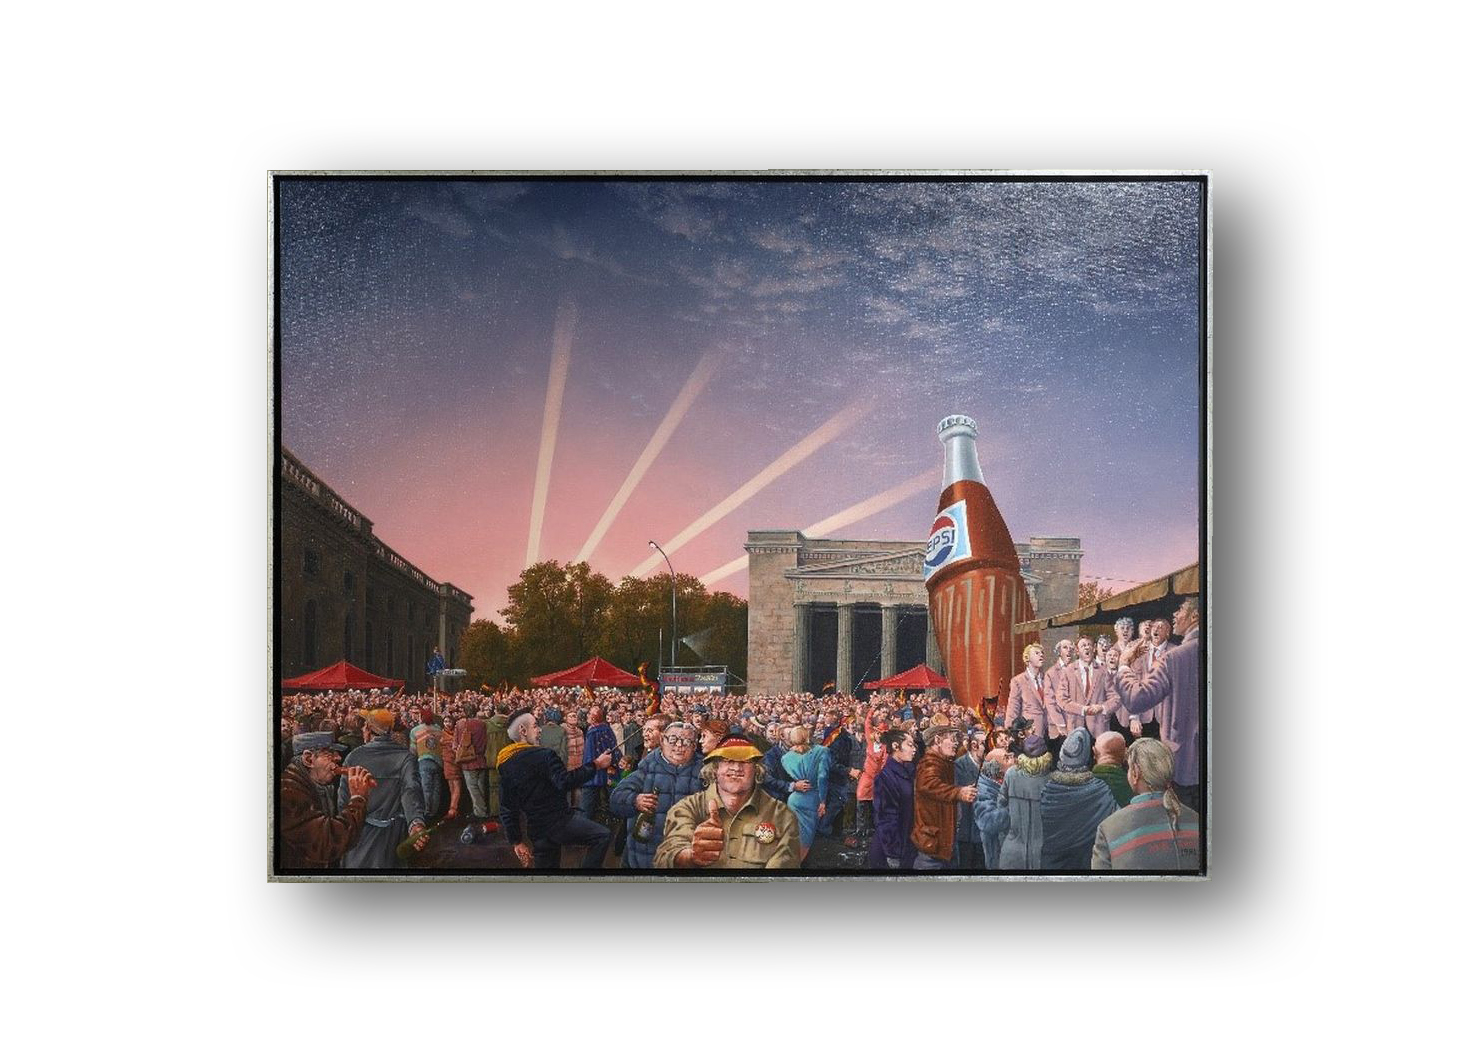 farbenfrohes Gemälde, Menschenmenge versammelt sich vor der Neuen Wache in Berlin, Teilnehmer tragen schwar-rot-goldene Fahnen, Hüte und Schals. Rechts auf einer Bühne ist ein in rosa gekleideter Herrenchor zu sehen. Dahinte eine überdimensionierte Pepsi-Flasche, die das Gebäude der Neuen Wache um Längen überragt. Vorne im Bild schaut ein Mann aus der Menschenmenge direkt zum Betrachter. Er trägt einen Anstecker mit der Aufschrift: 3. Okt. 90